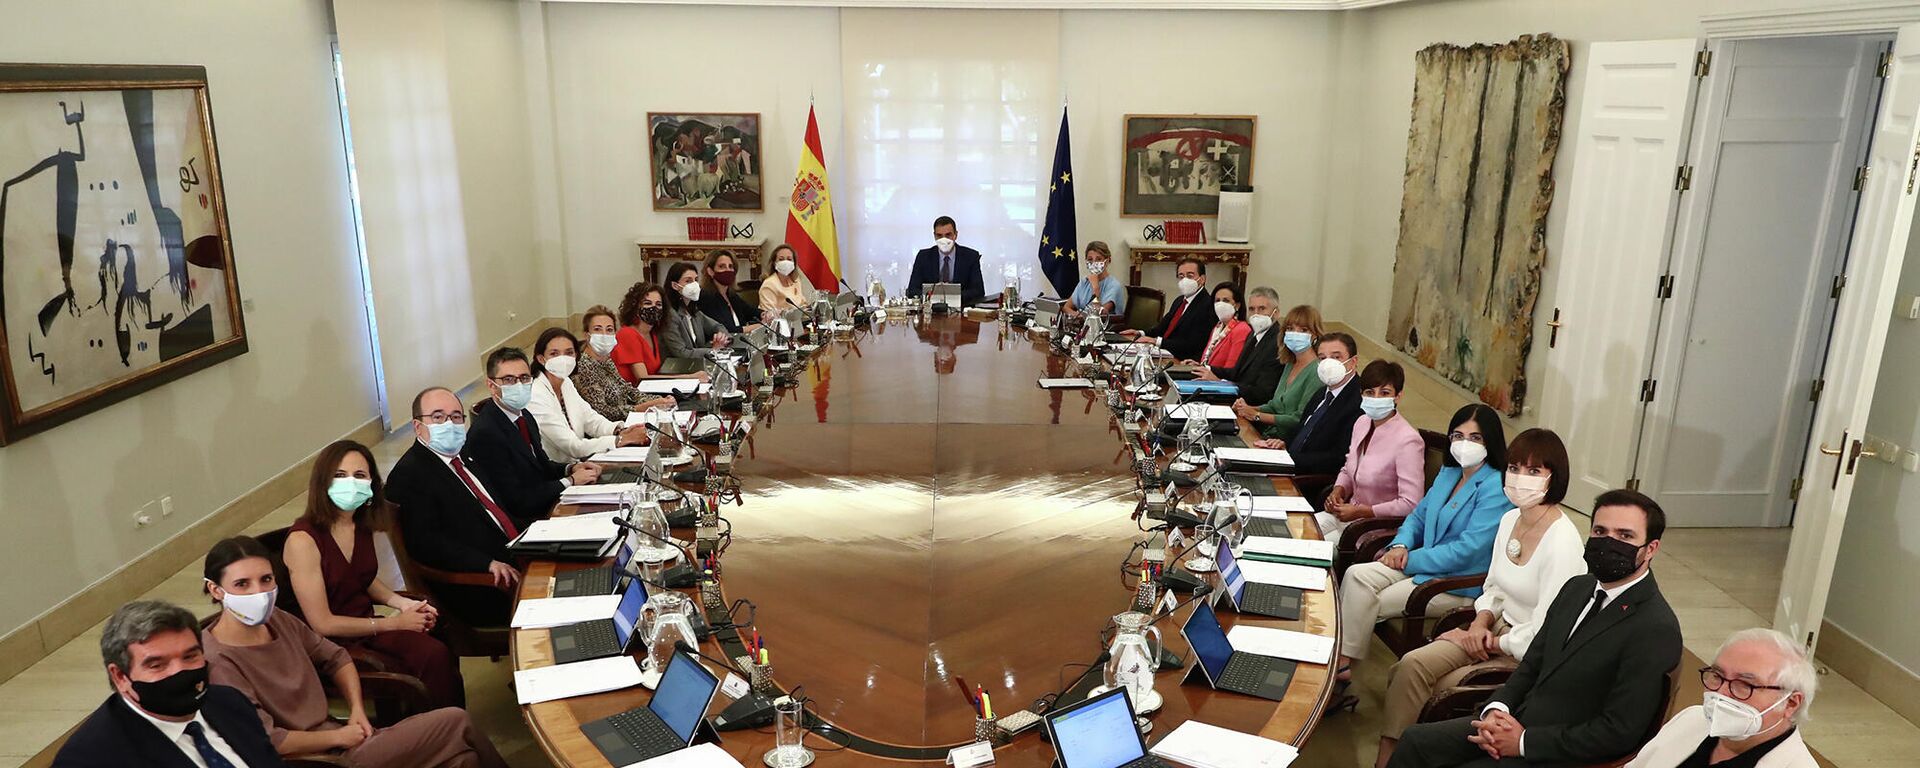 Reunión del Consejo de Ministros de España del 13 de julio de 2021 - Sputnik Mundo, 1920, 27.07.2021